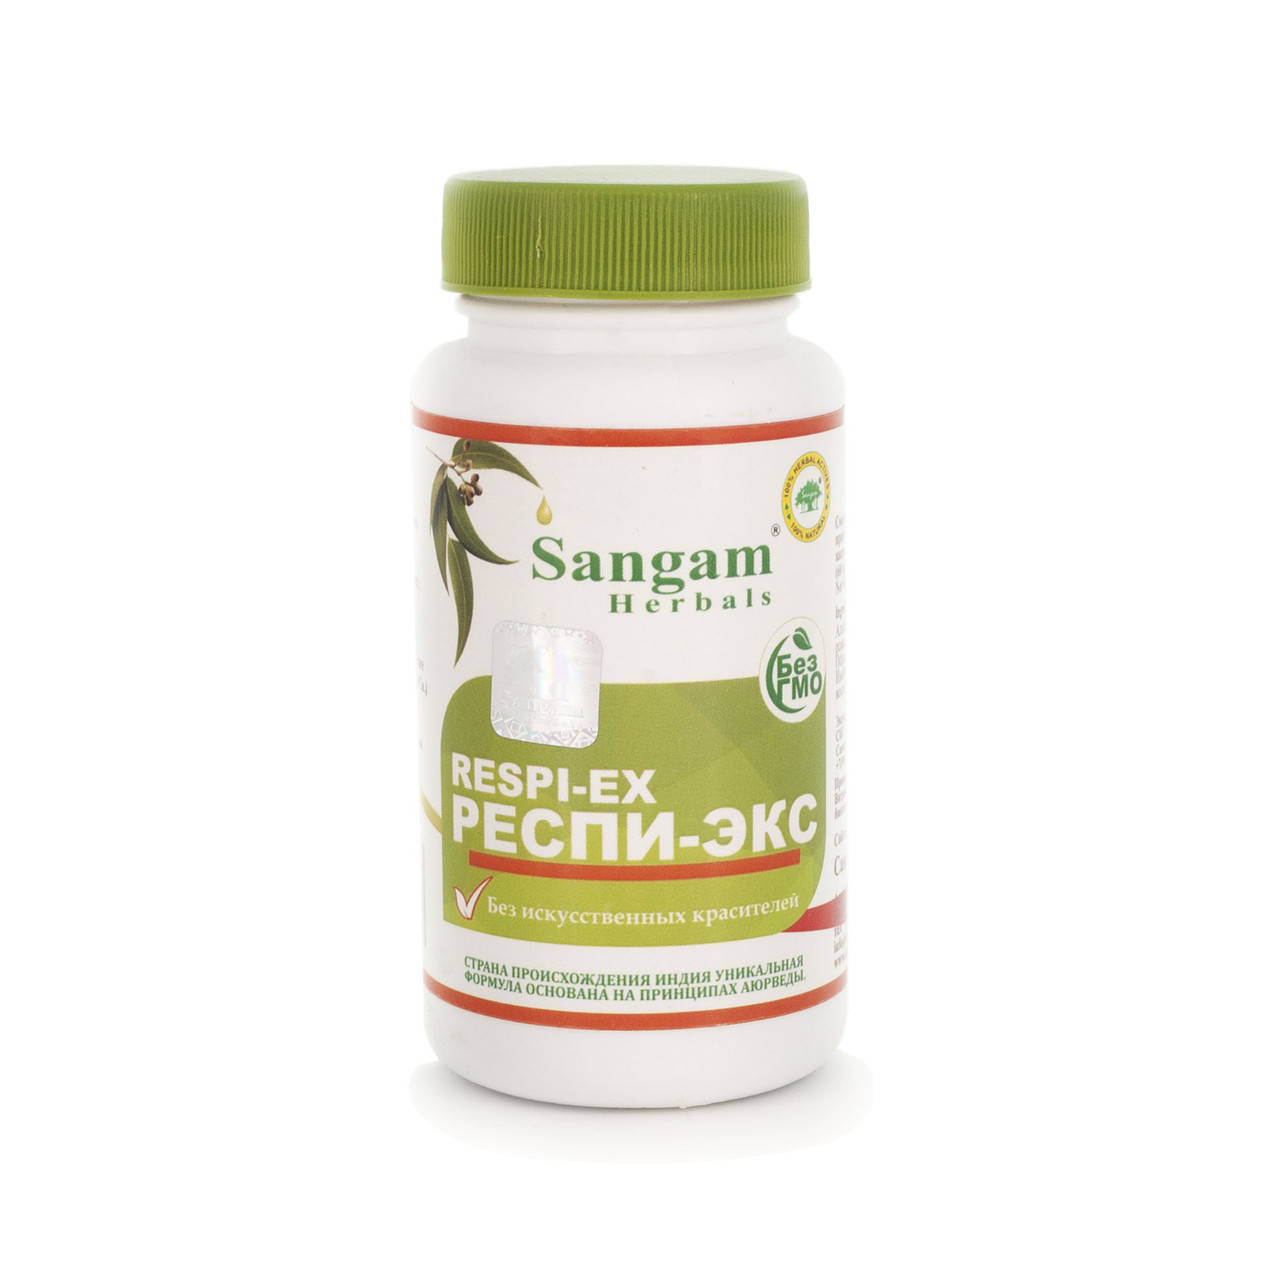 Респи-Экс, 60 таблеток, Sangam Herbals, для поддержания здоровья бронхолегочной системы